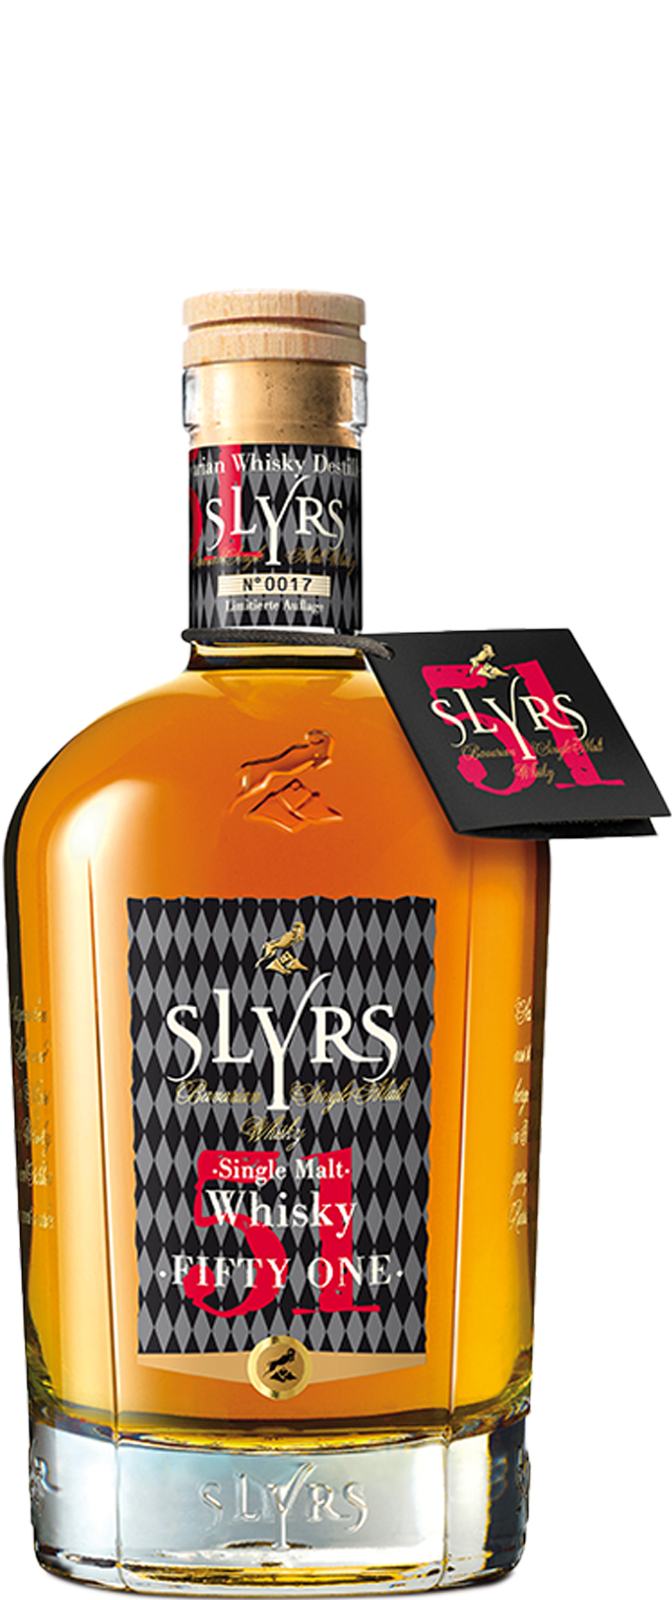 SLYRS Fifty One Single Malt Whisky SLYRS Destillerie